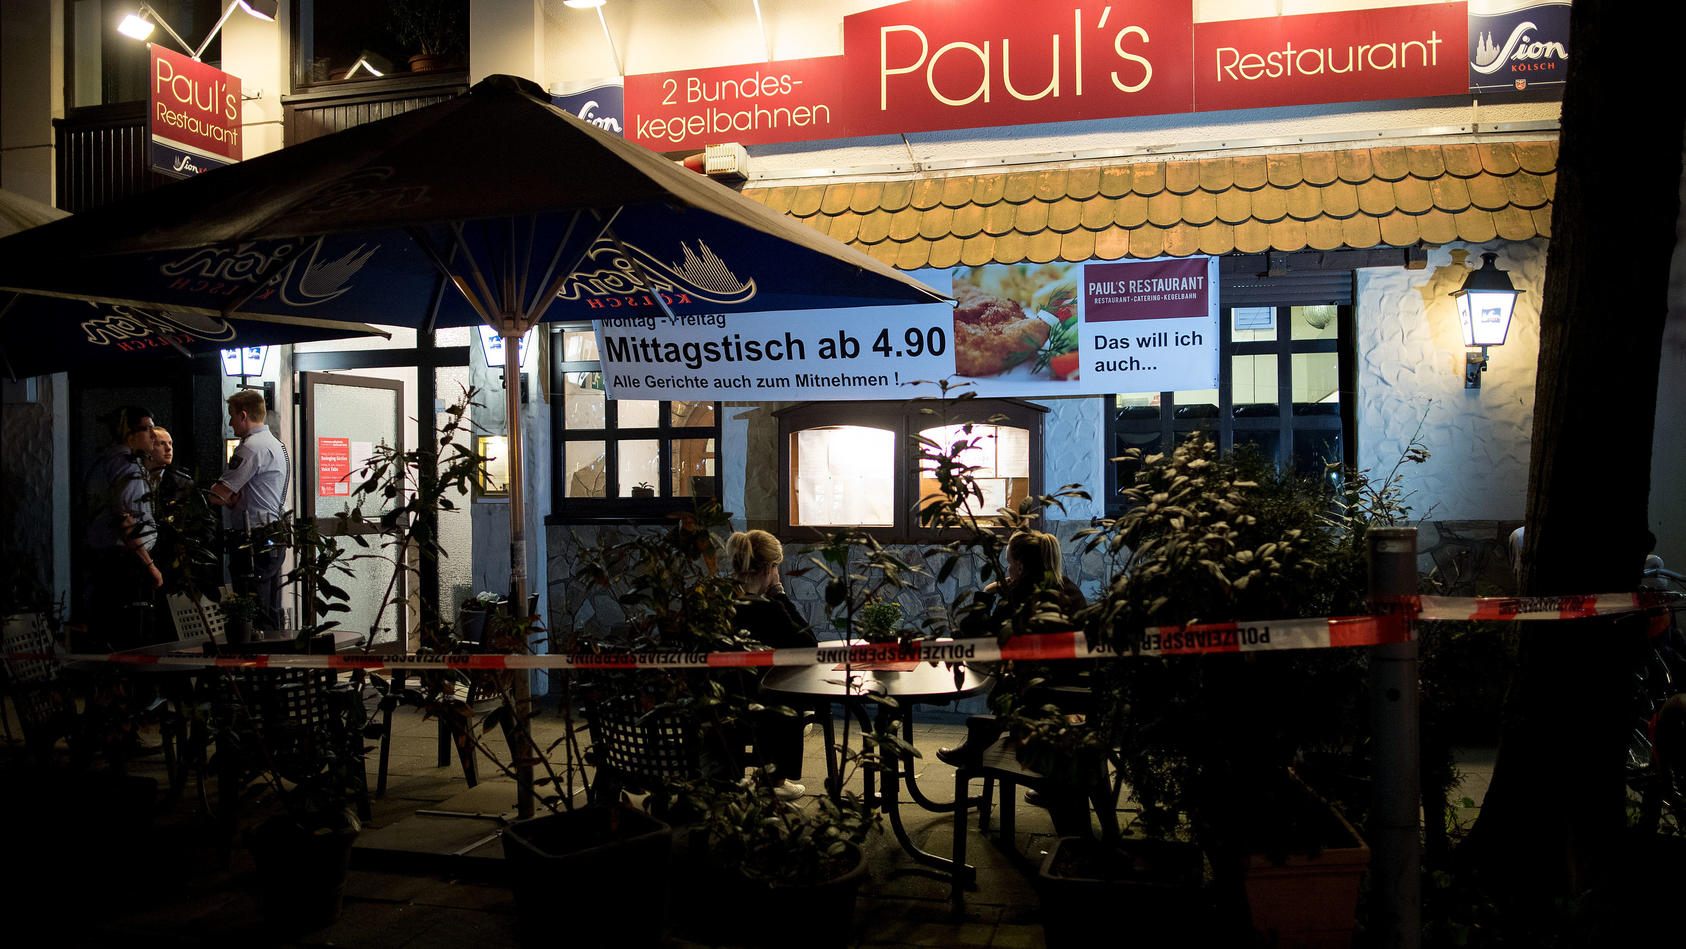 13.04.2018, Nordrhein-Westfalen, Köln: Polizisten stehen vor einem Restaurant. Im Keller des Restaurants hat die Polizei zwei Leichen gefunden. Wie der Mann und die Frau starben und in welcher Beziehung sie zueinander standen, dazu machte die Polizei